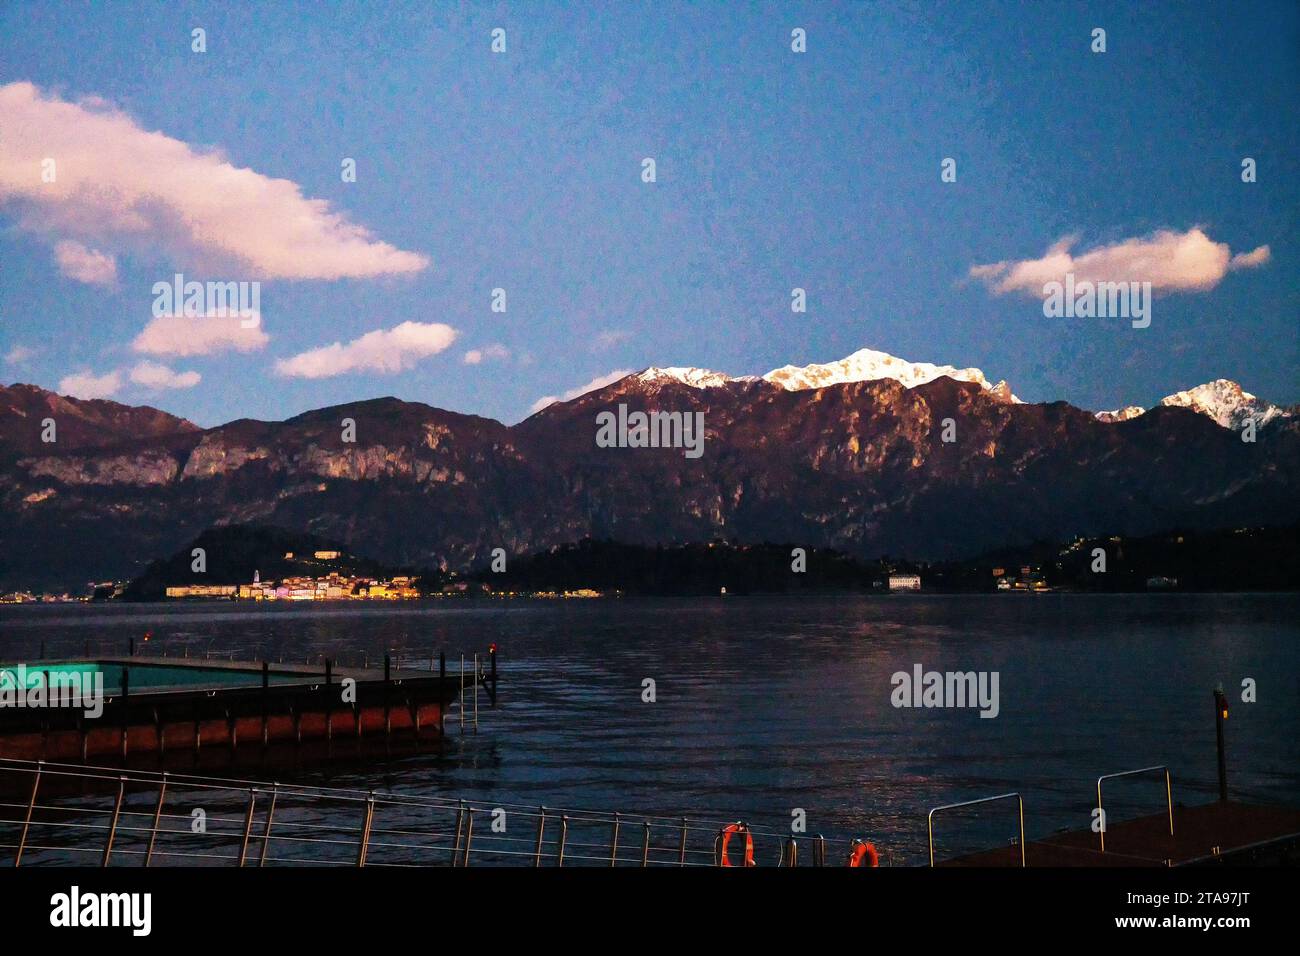 Stupita vista serale al tramonto sul lago di Como con le Alpi italiane (montagne innevate) e la città - Bellagio (?). Breve viaggio durante la settimana di Natale! Foto Stock